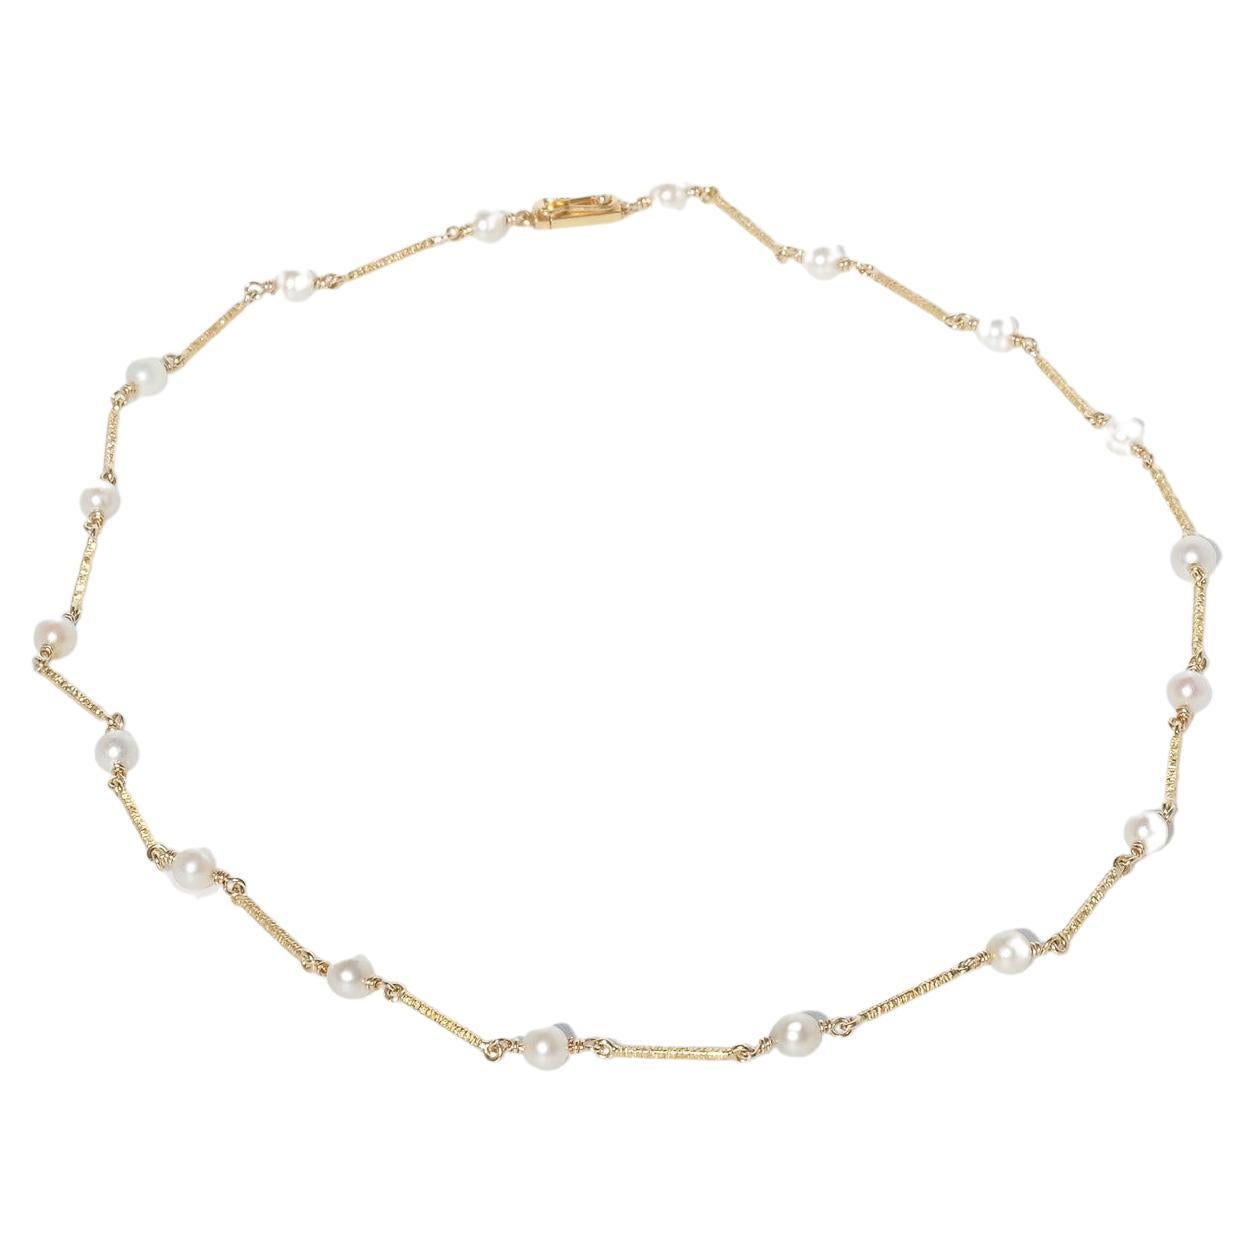 Collier vintage en or 14 carats et perles, fabriqué l'année 1968 par Konstantin Buchert